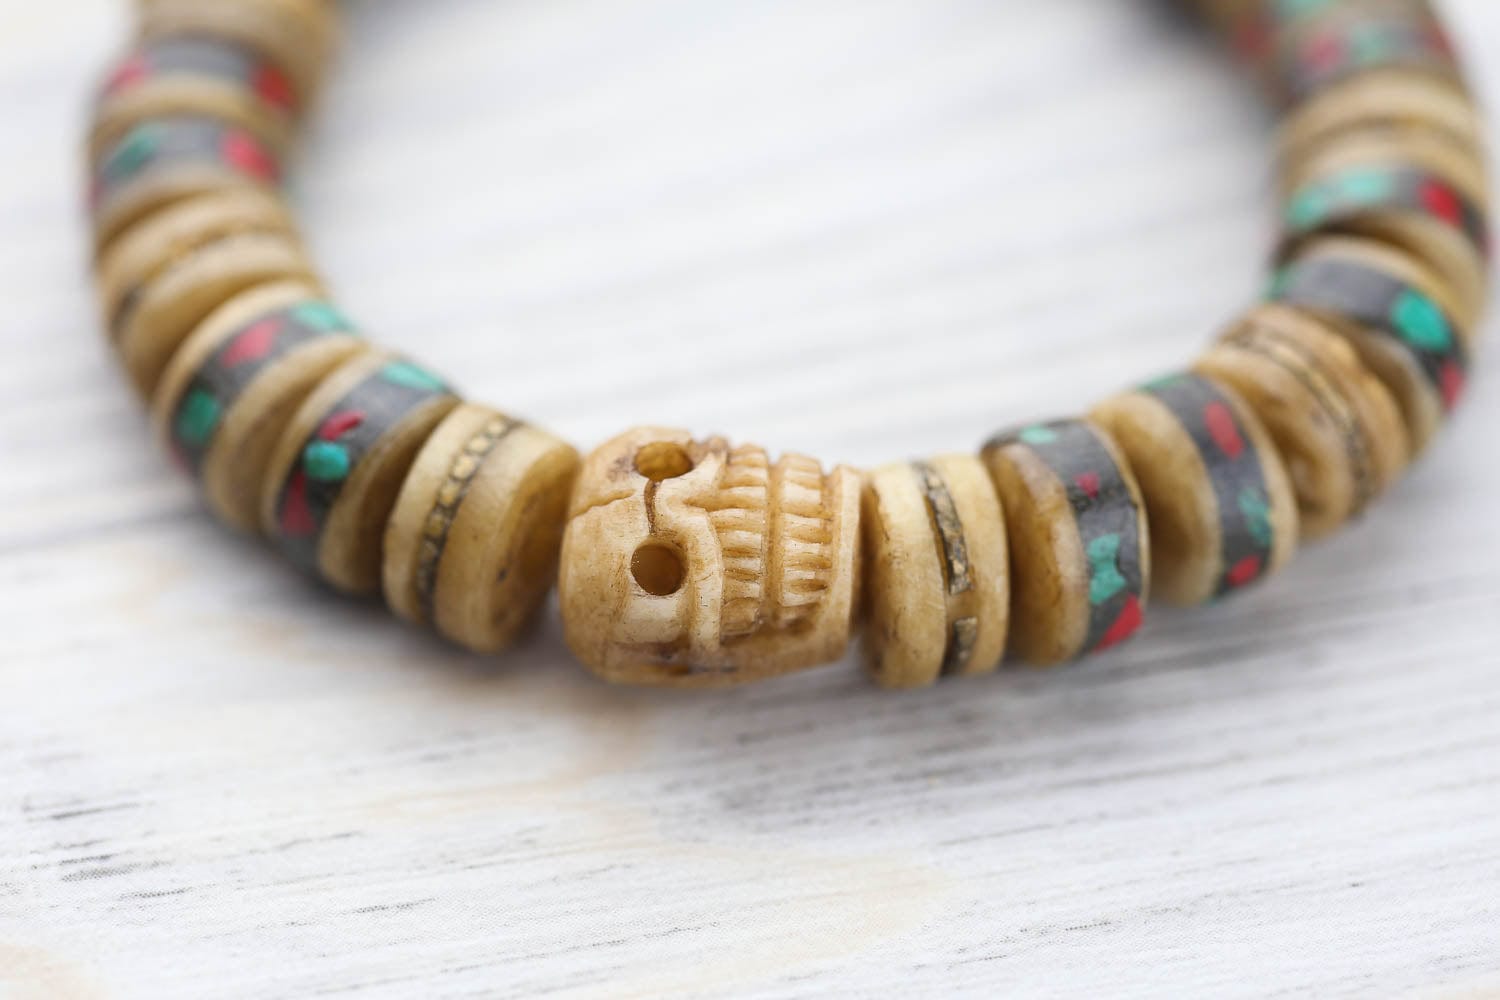 Bone w/Inlay Prayer Beads Mala - Nepal 12mm (NP544) - Happy Mango Beads